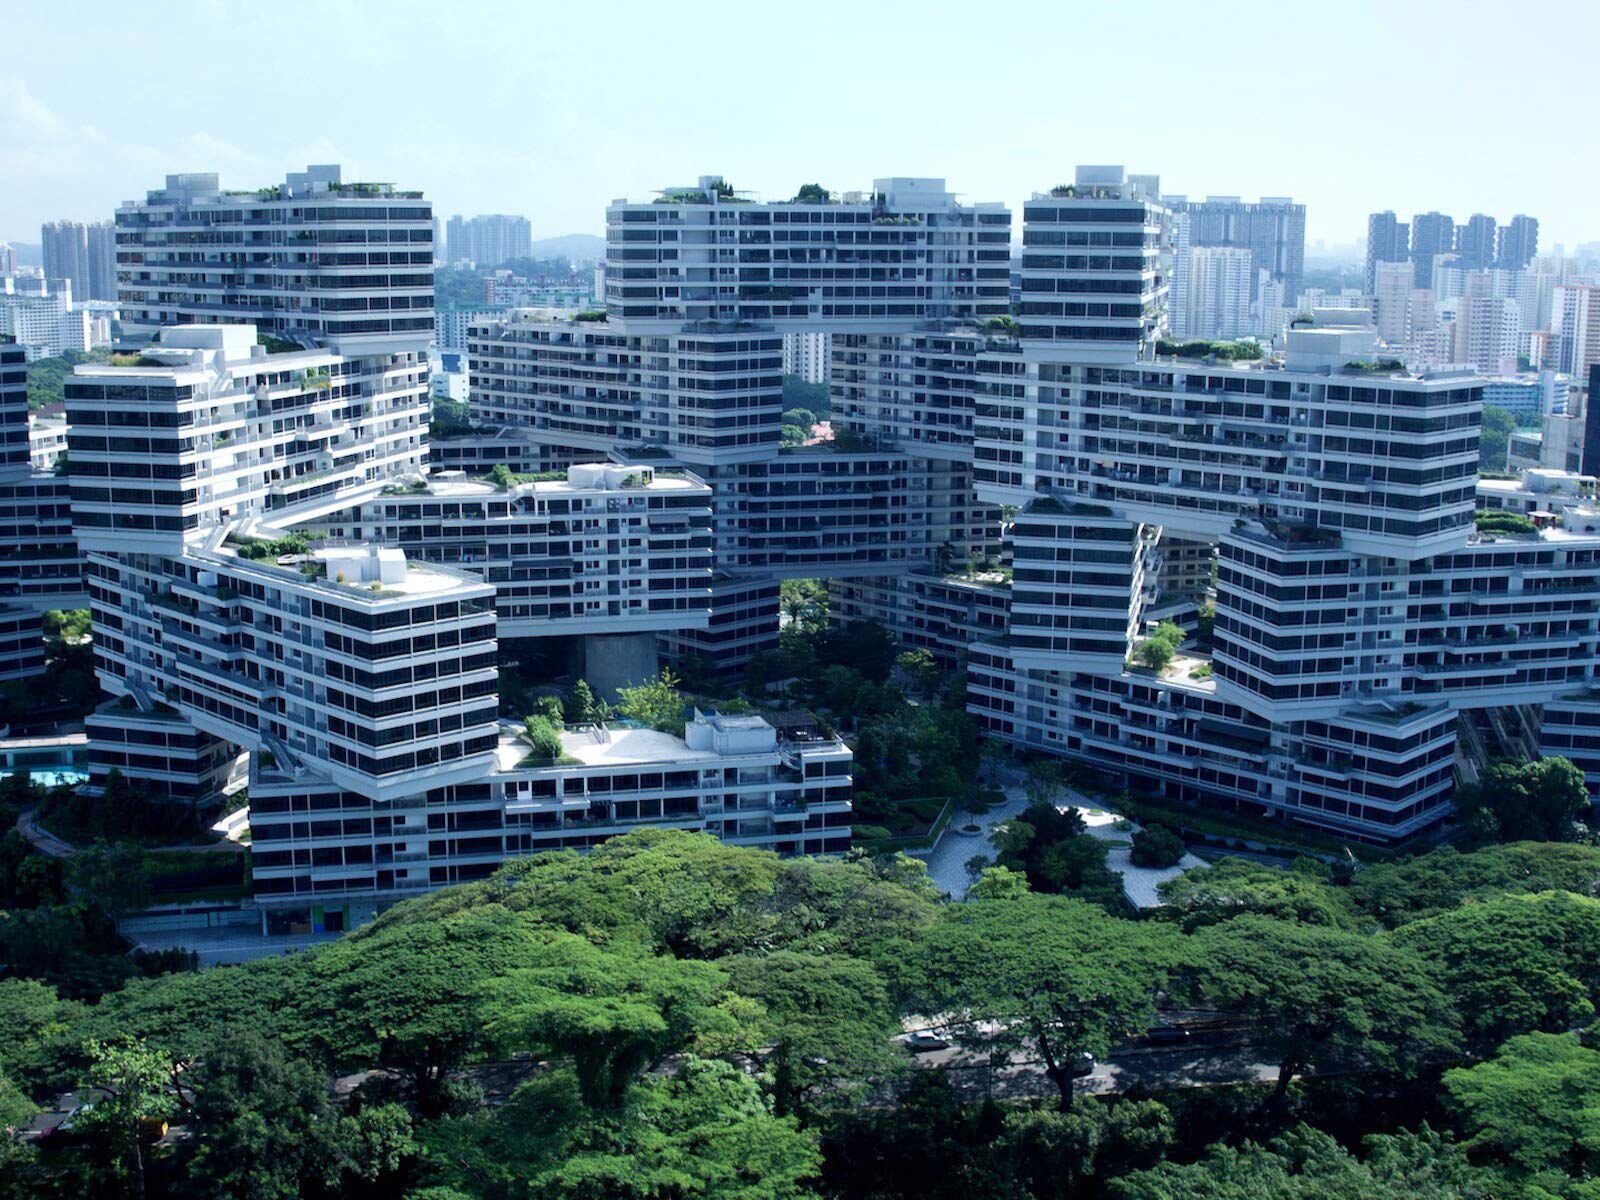 Una vista aérea de Singapur de la serie documental de Amazon Prime Video 'Aerial Asia'.